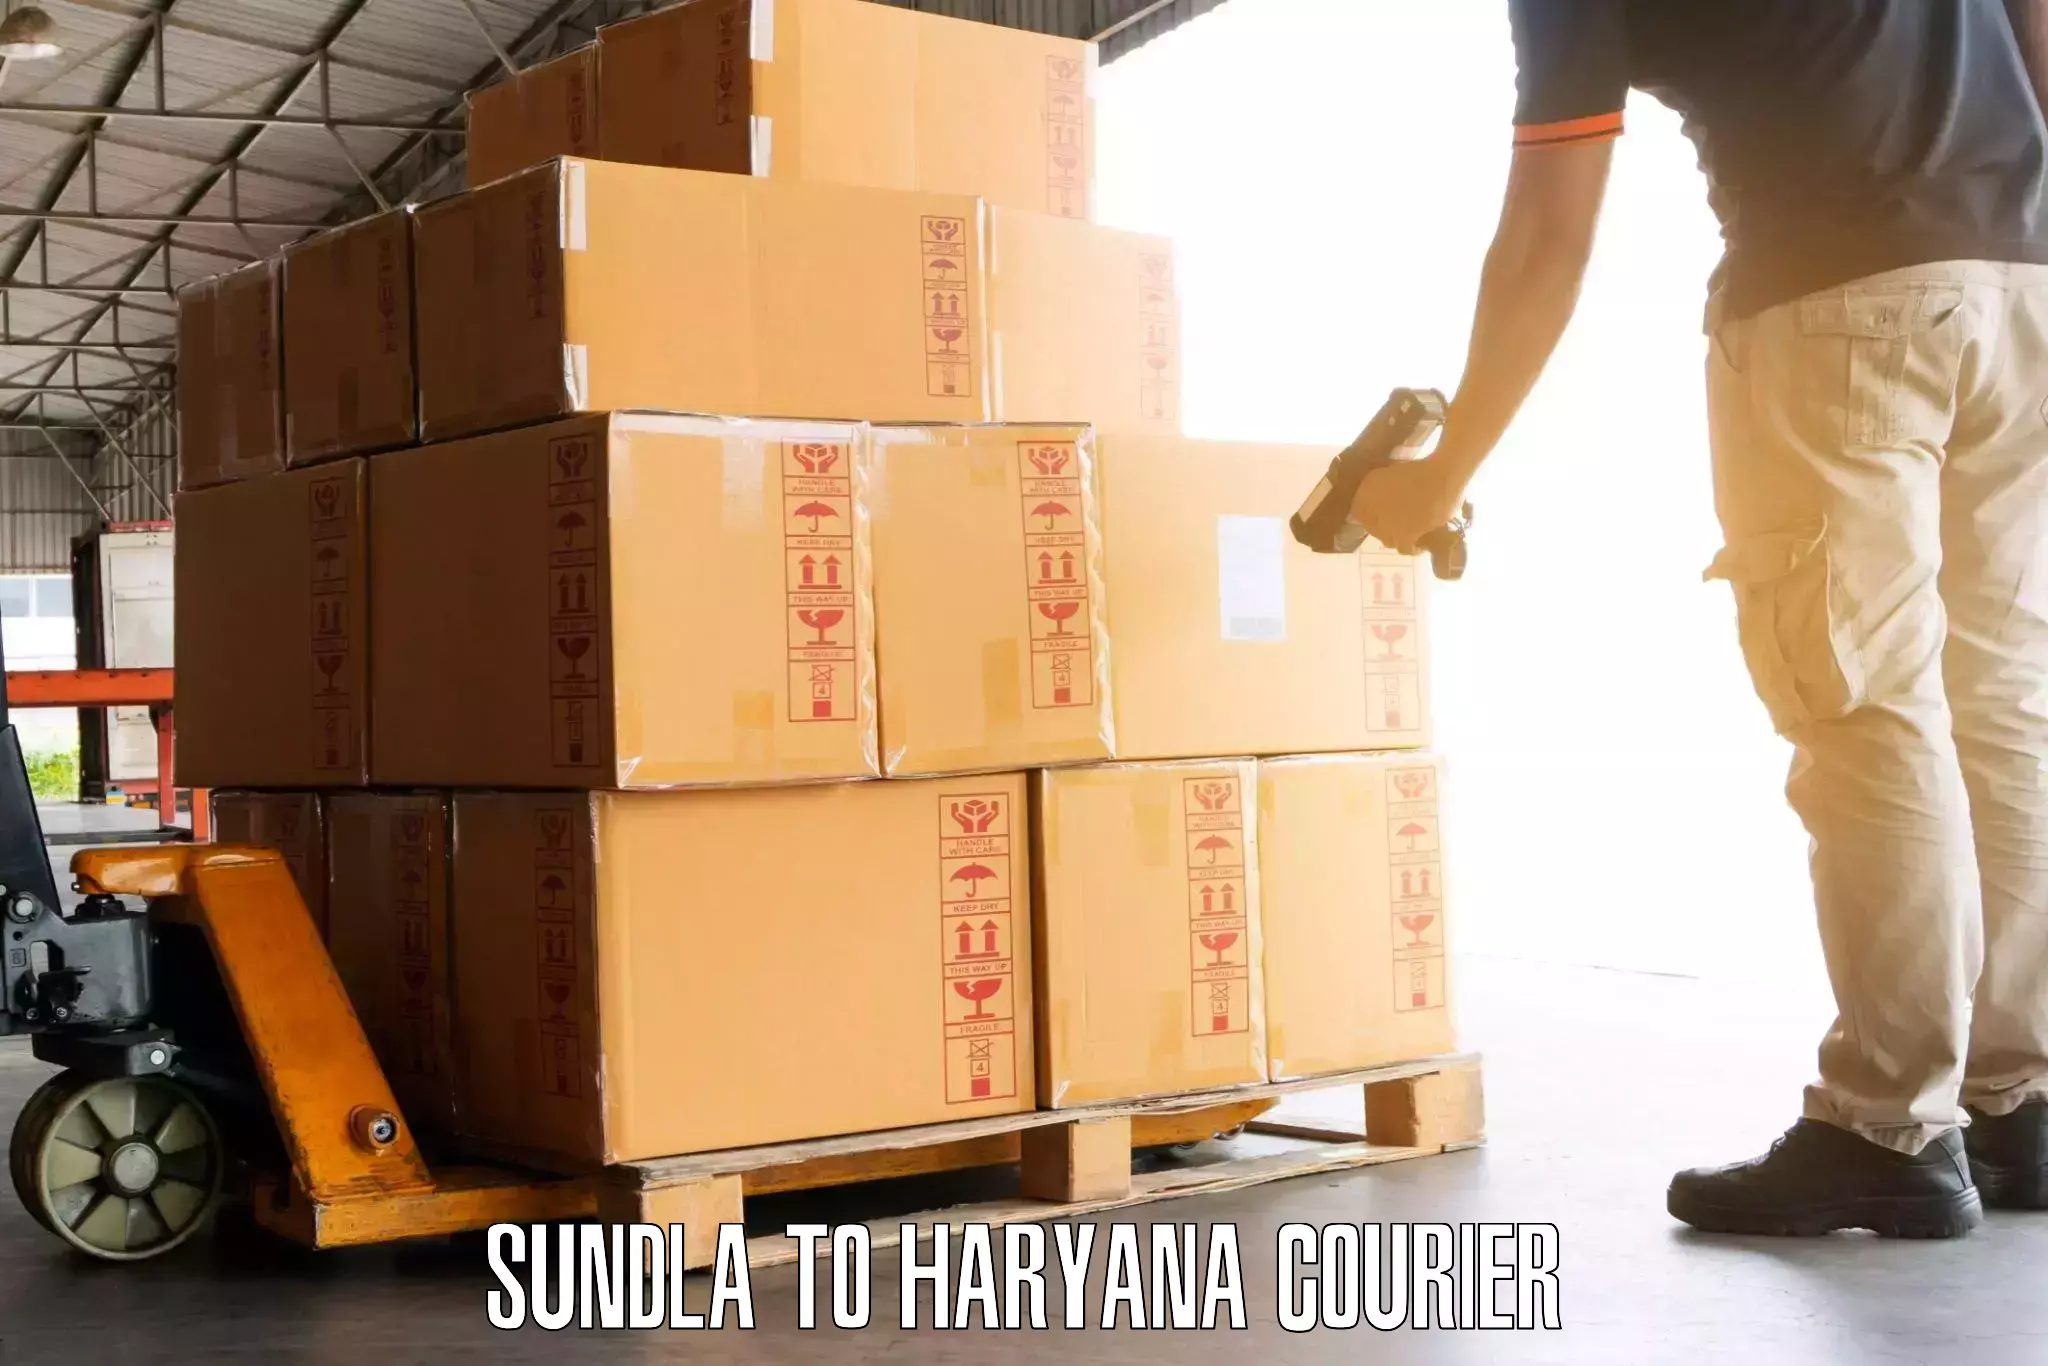 Luggage transport guidelines Sundla to NCR Haryana